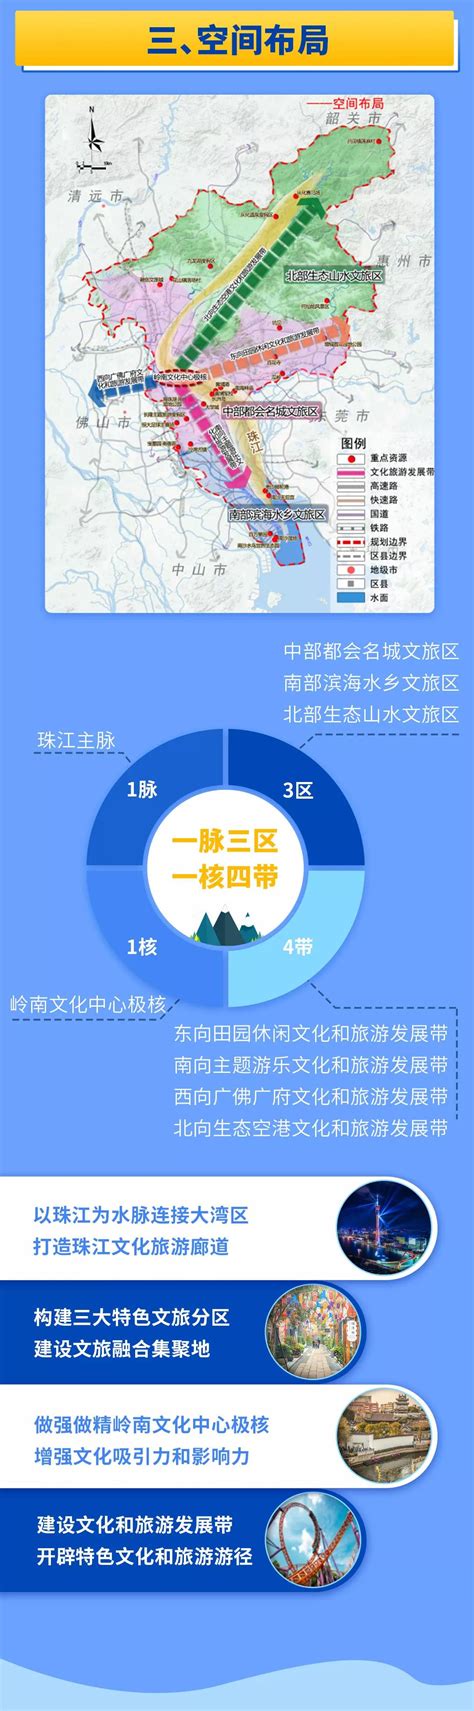 广东汕尾市十四五规划新建34GW海上风电！-国际电力网